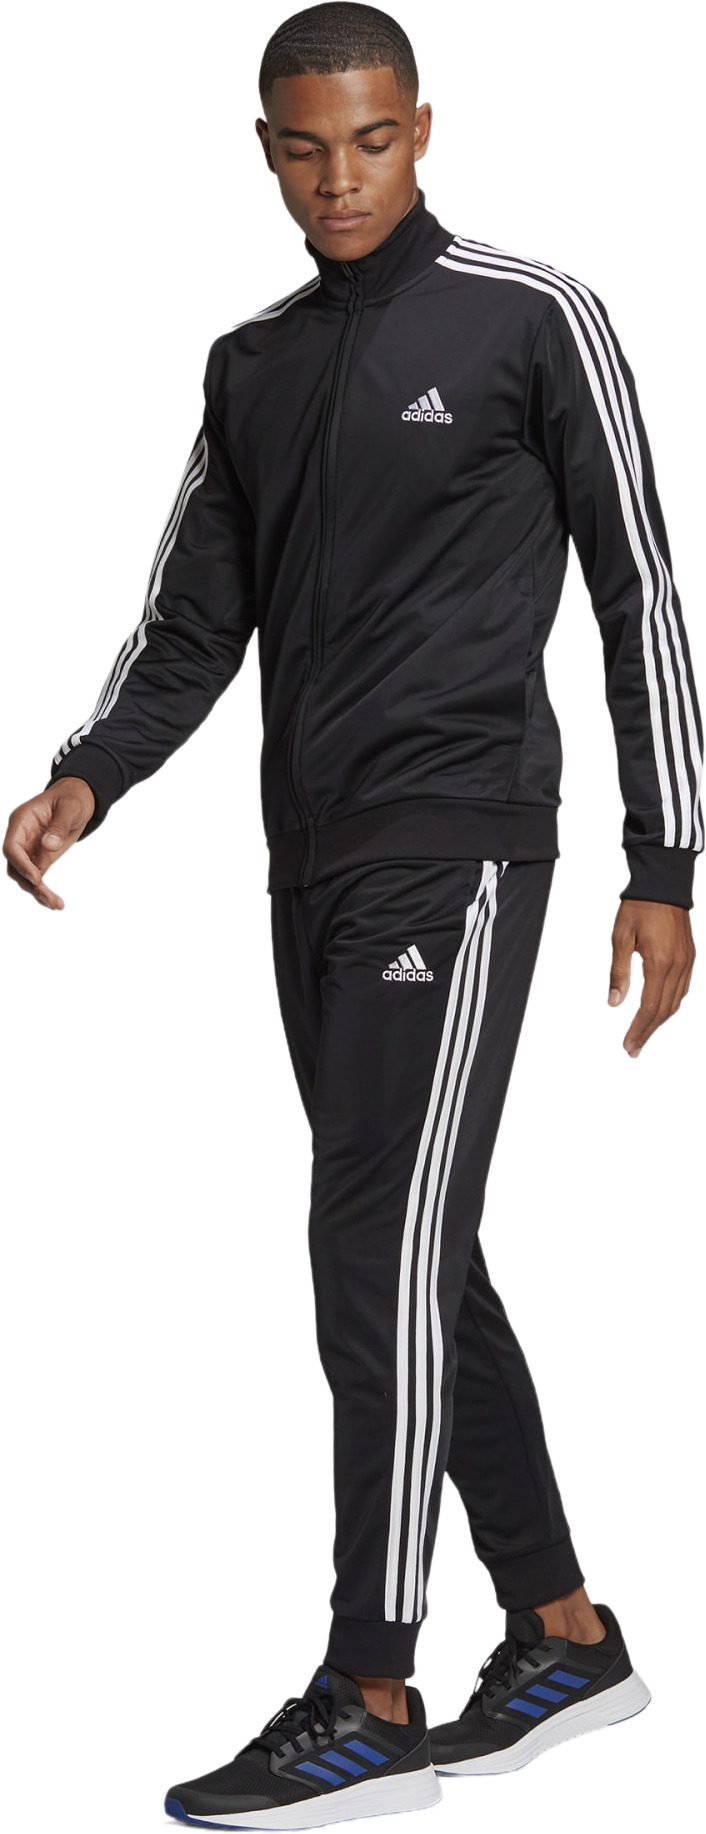 Спортивный костюм Adidas 3-Stripes Track Suit (GK9651) купить за 7 149 руб. в интернет-магазине